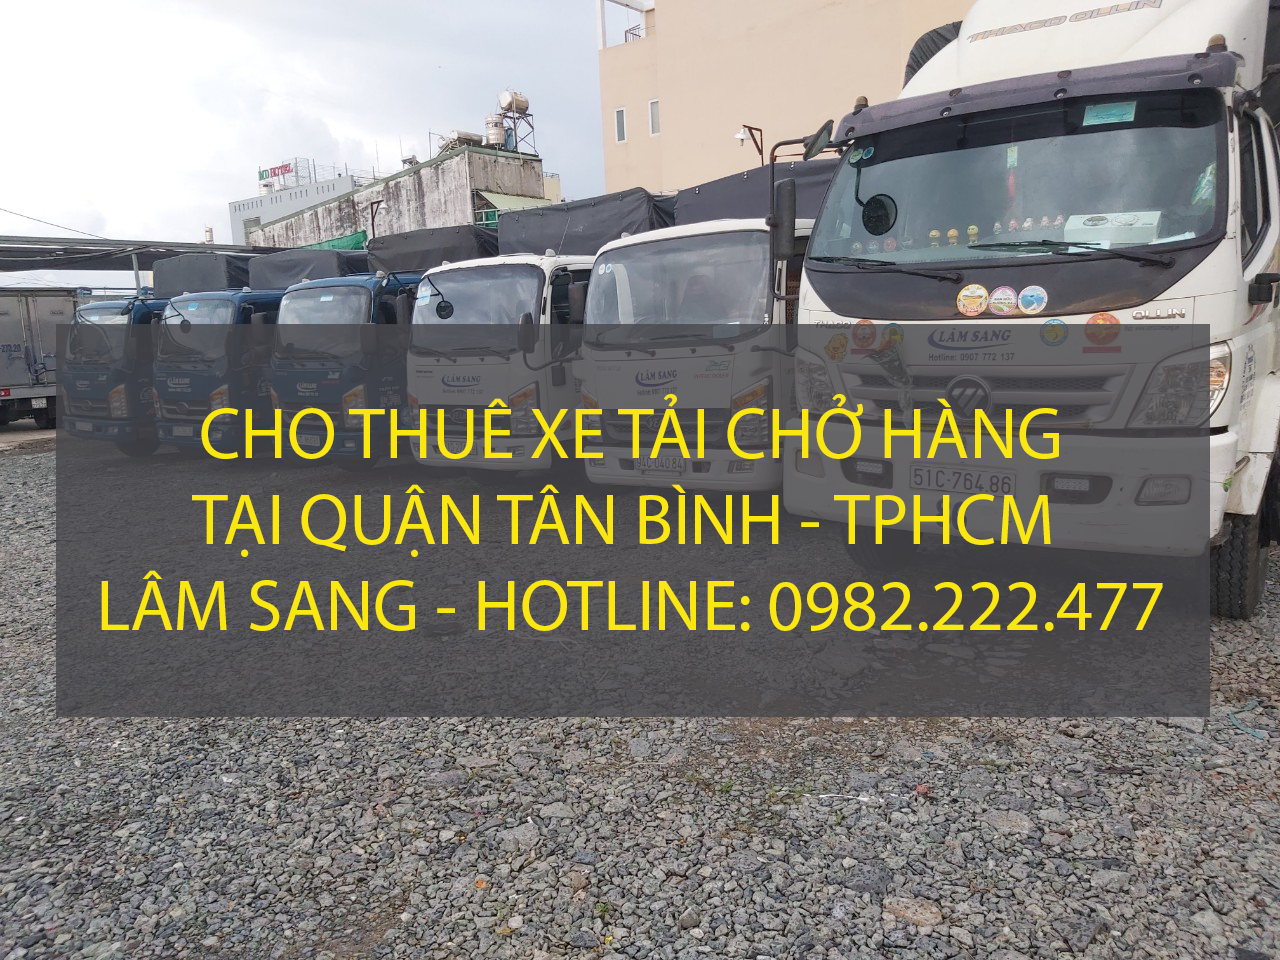 Chuyên cho thuê xe tải chở hàng tại Quận Tân Bình – Vận tải Lâm Sang